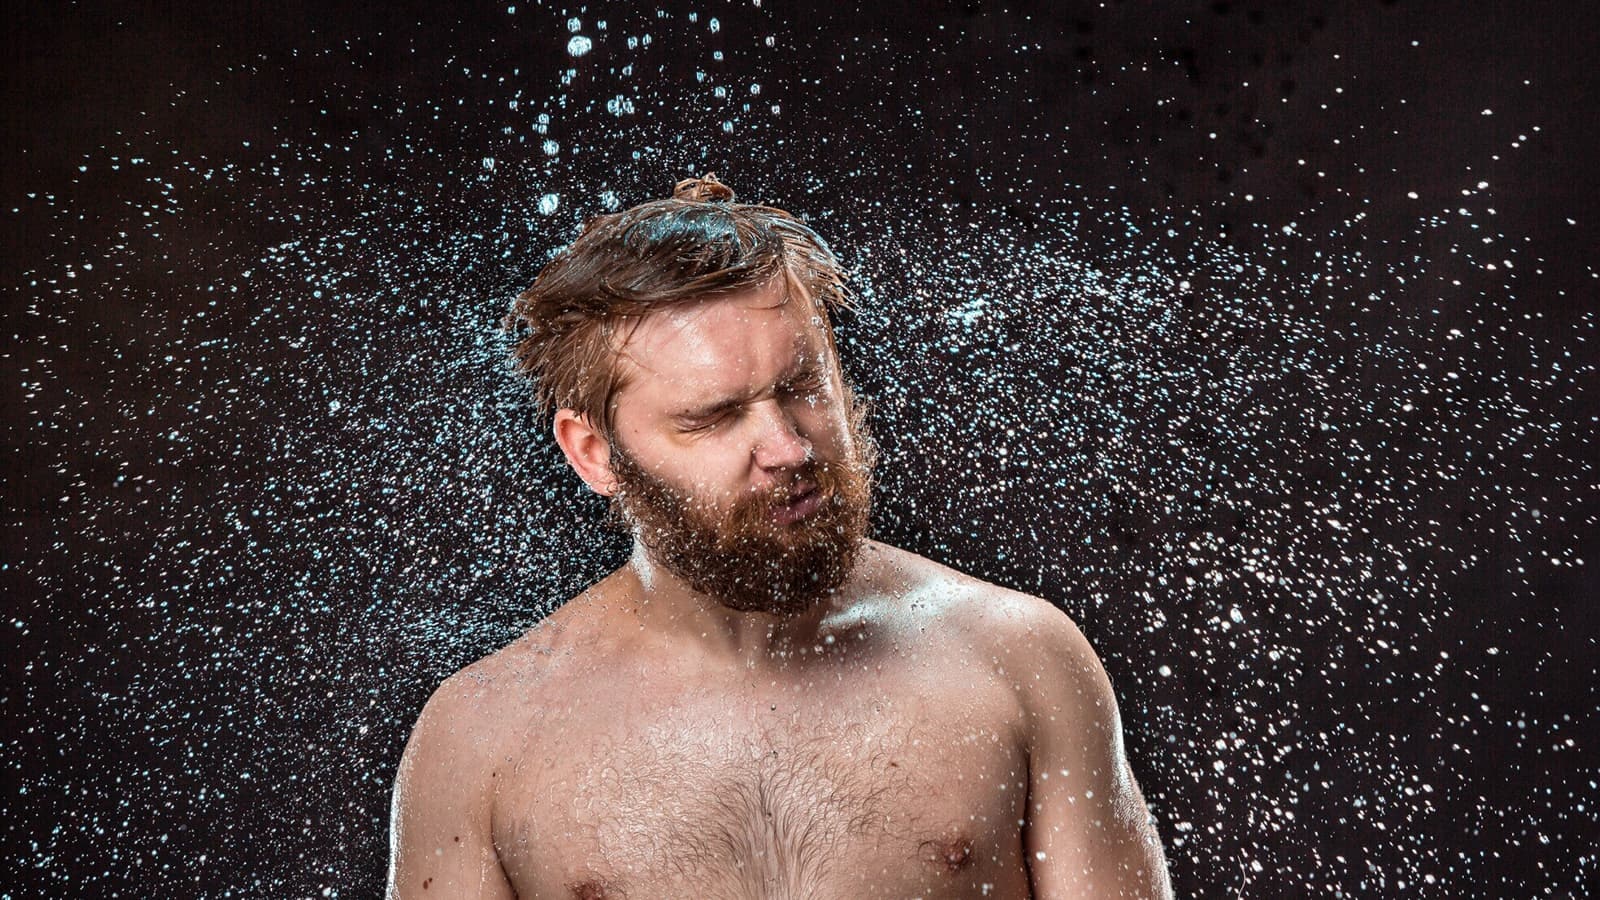 Kalt duschen nach dem Sport. Bild von einem Mann, den das kalt Duschen zum schütteln bringt.